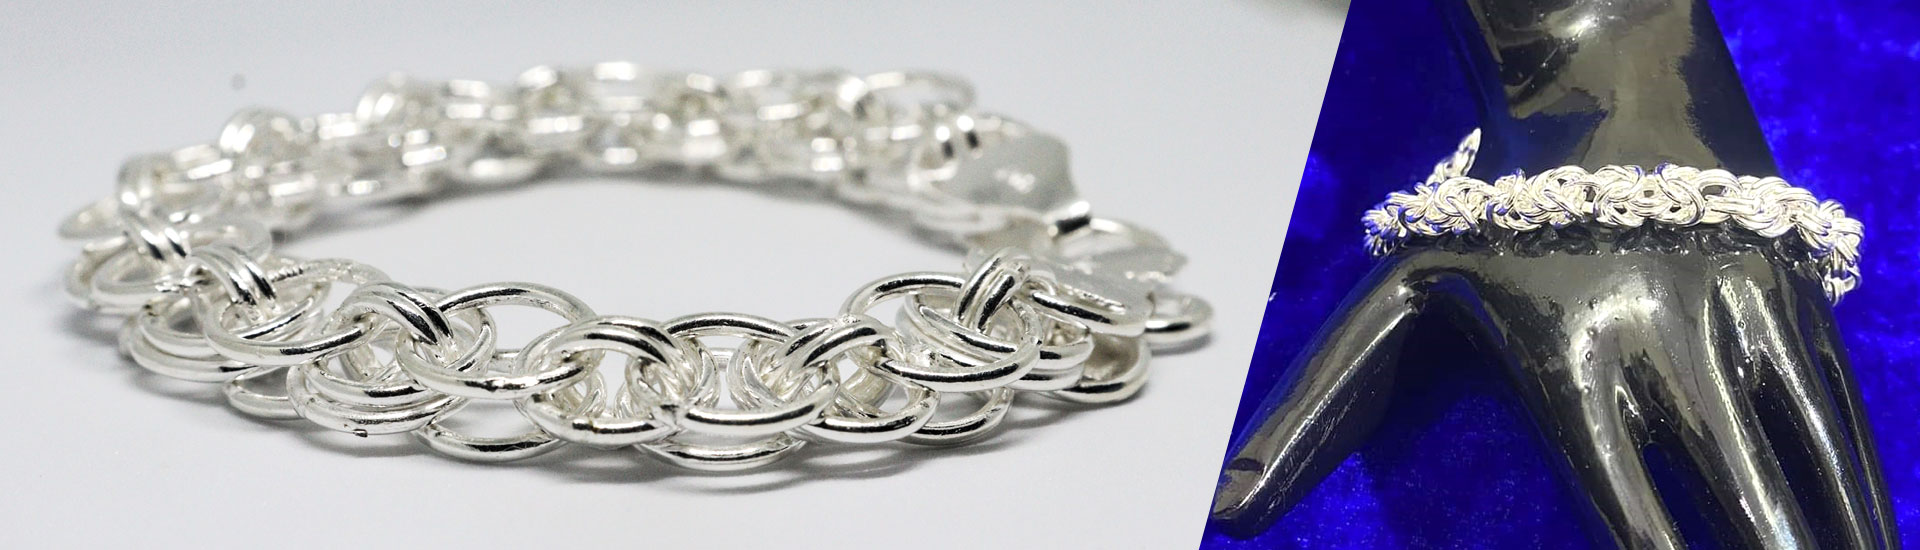 Buy Stylish Silver Bracelets